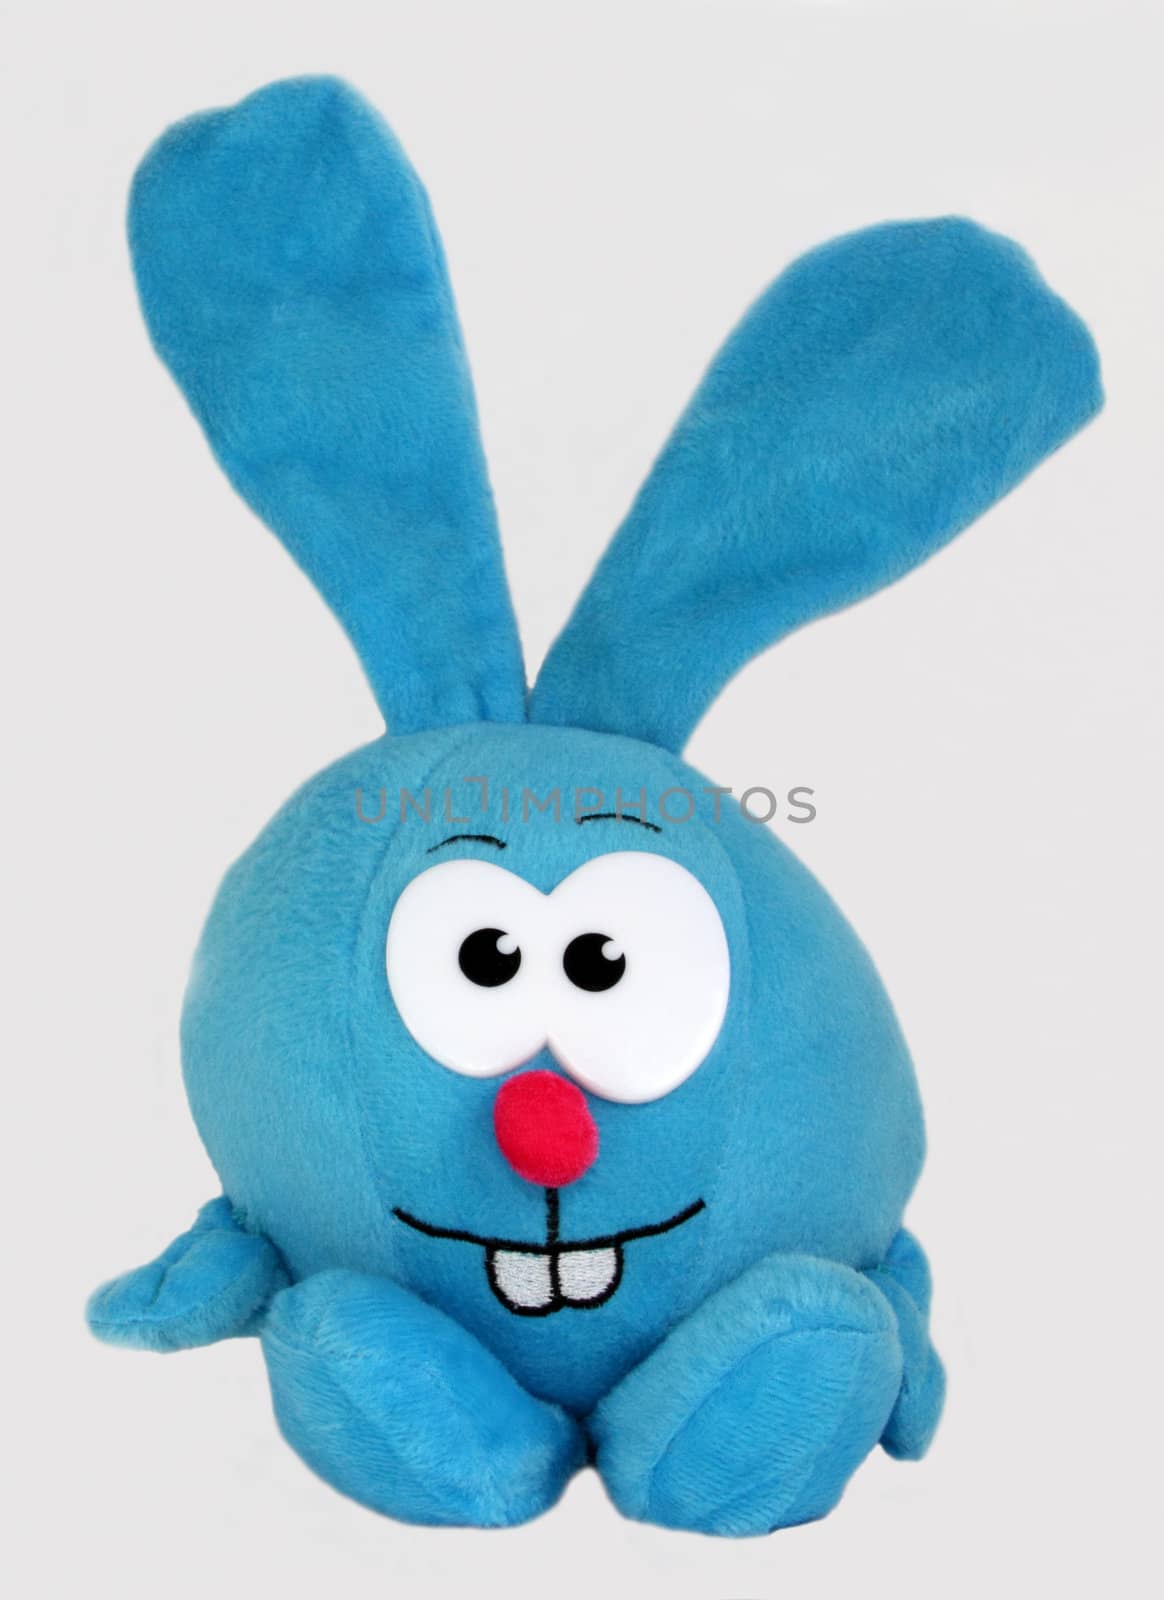 Toy rabbit by vladnad